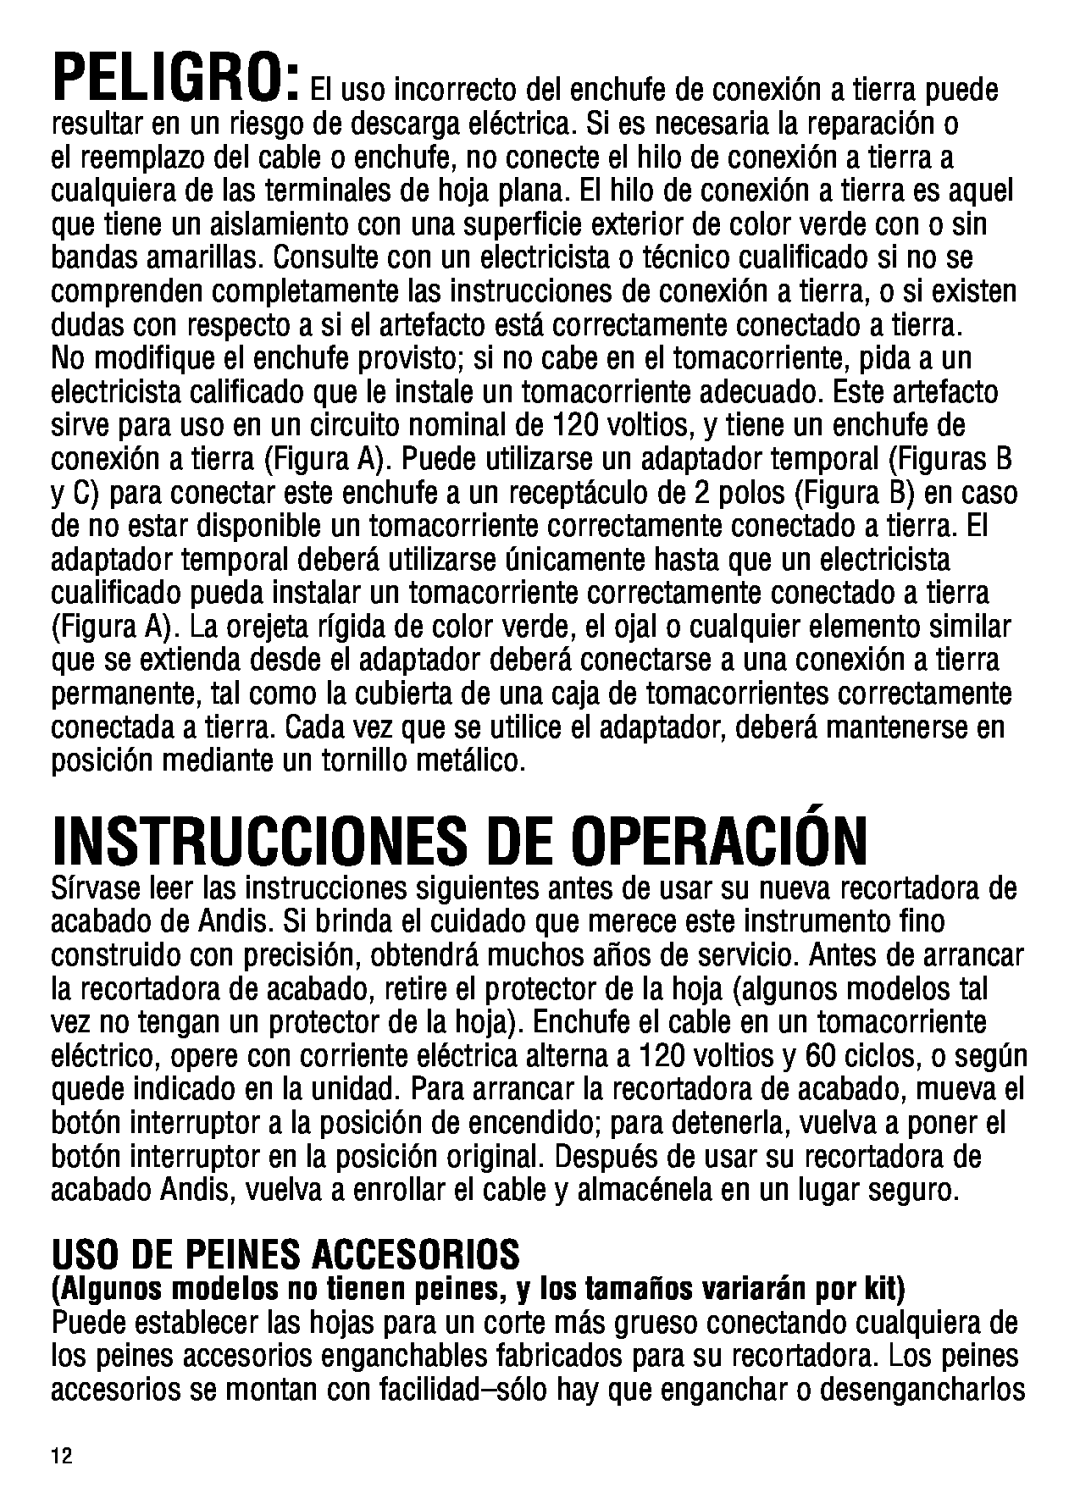 Andis Company ML, GC manual Instrucciones De Operación, Uso De Peines Accesorios 